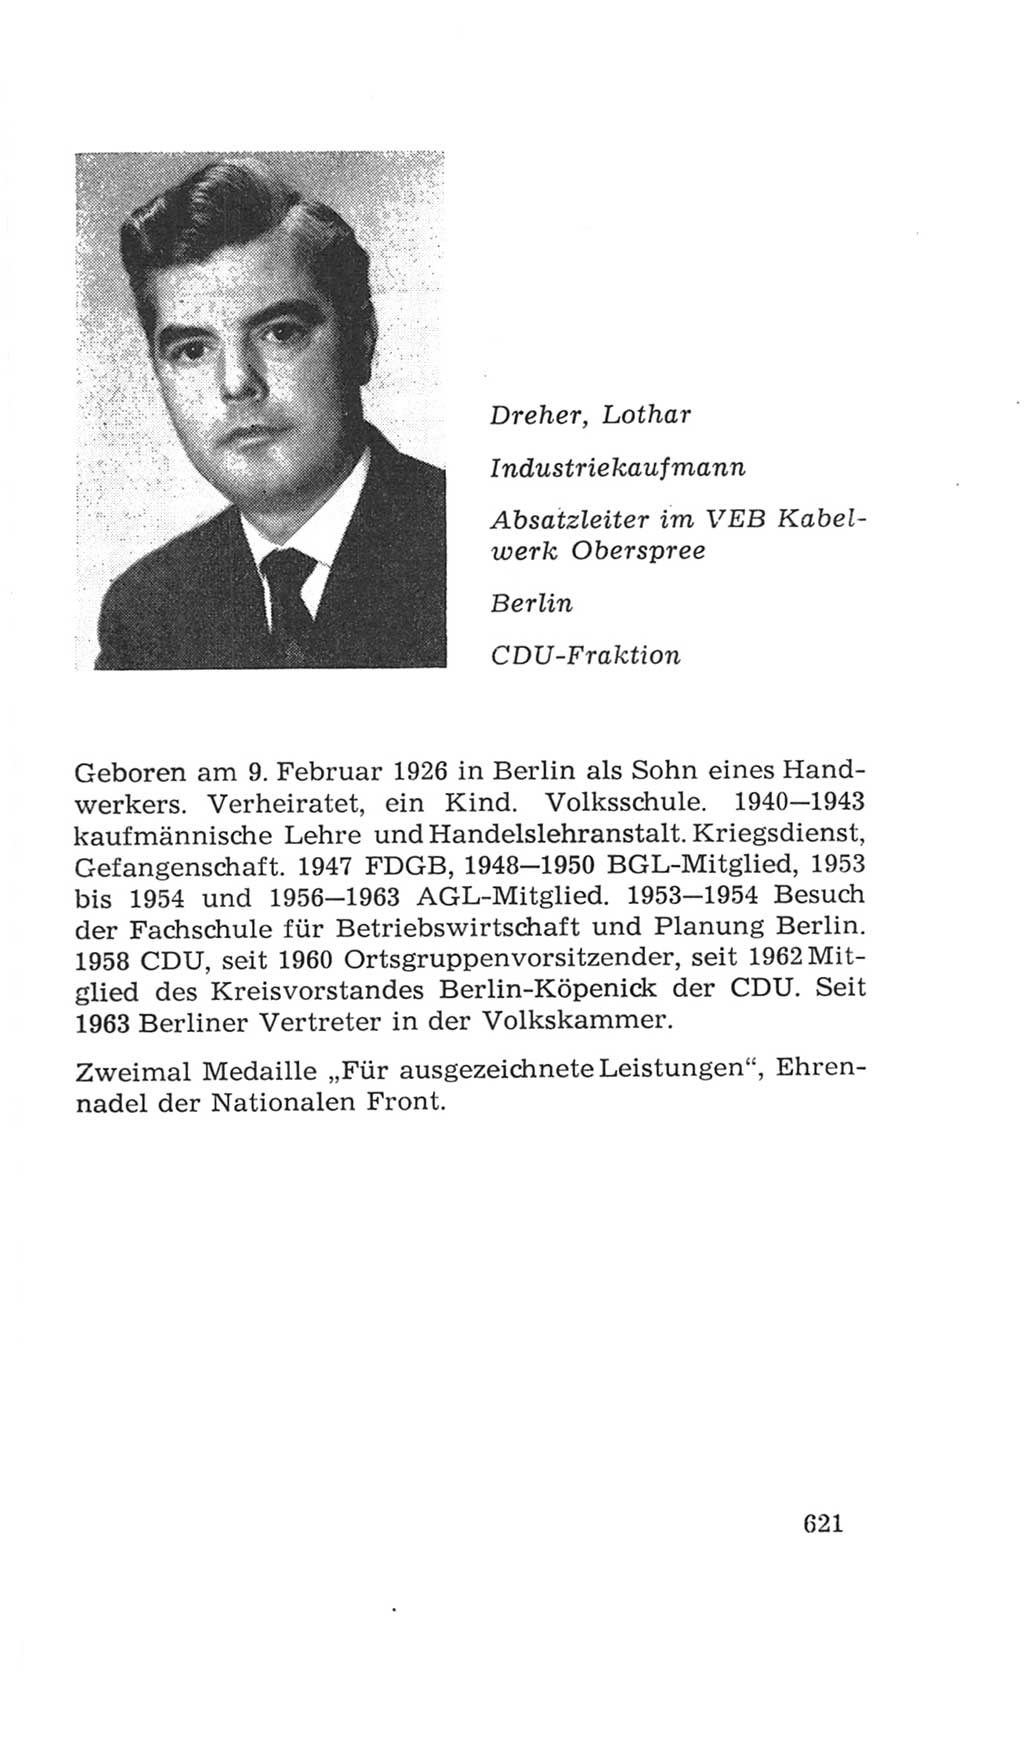 Volkskammer (VK) der Deutschen Demokratischen Republik (DDR), 4. Wahlperiode 1963-1967, Seite 621 (VK. DDR 4. WP. 1963-1967, S. 621)